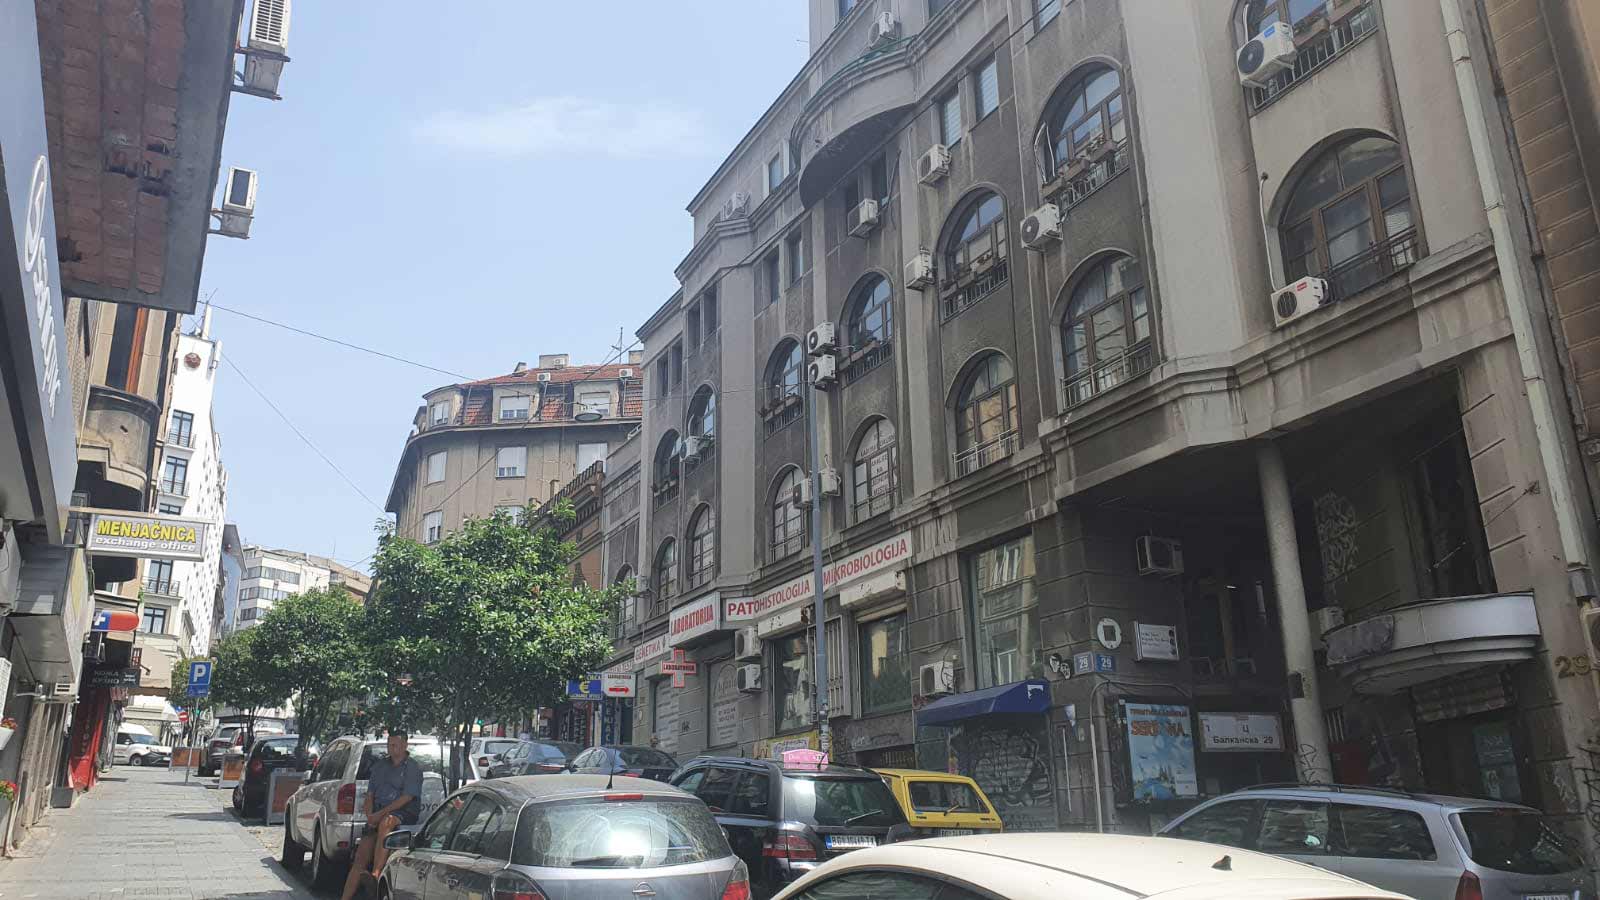 Balkanska street